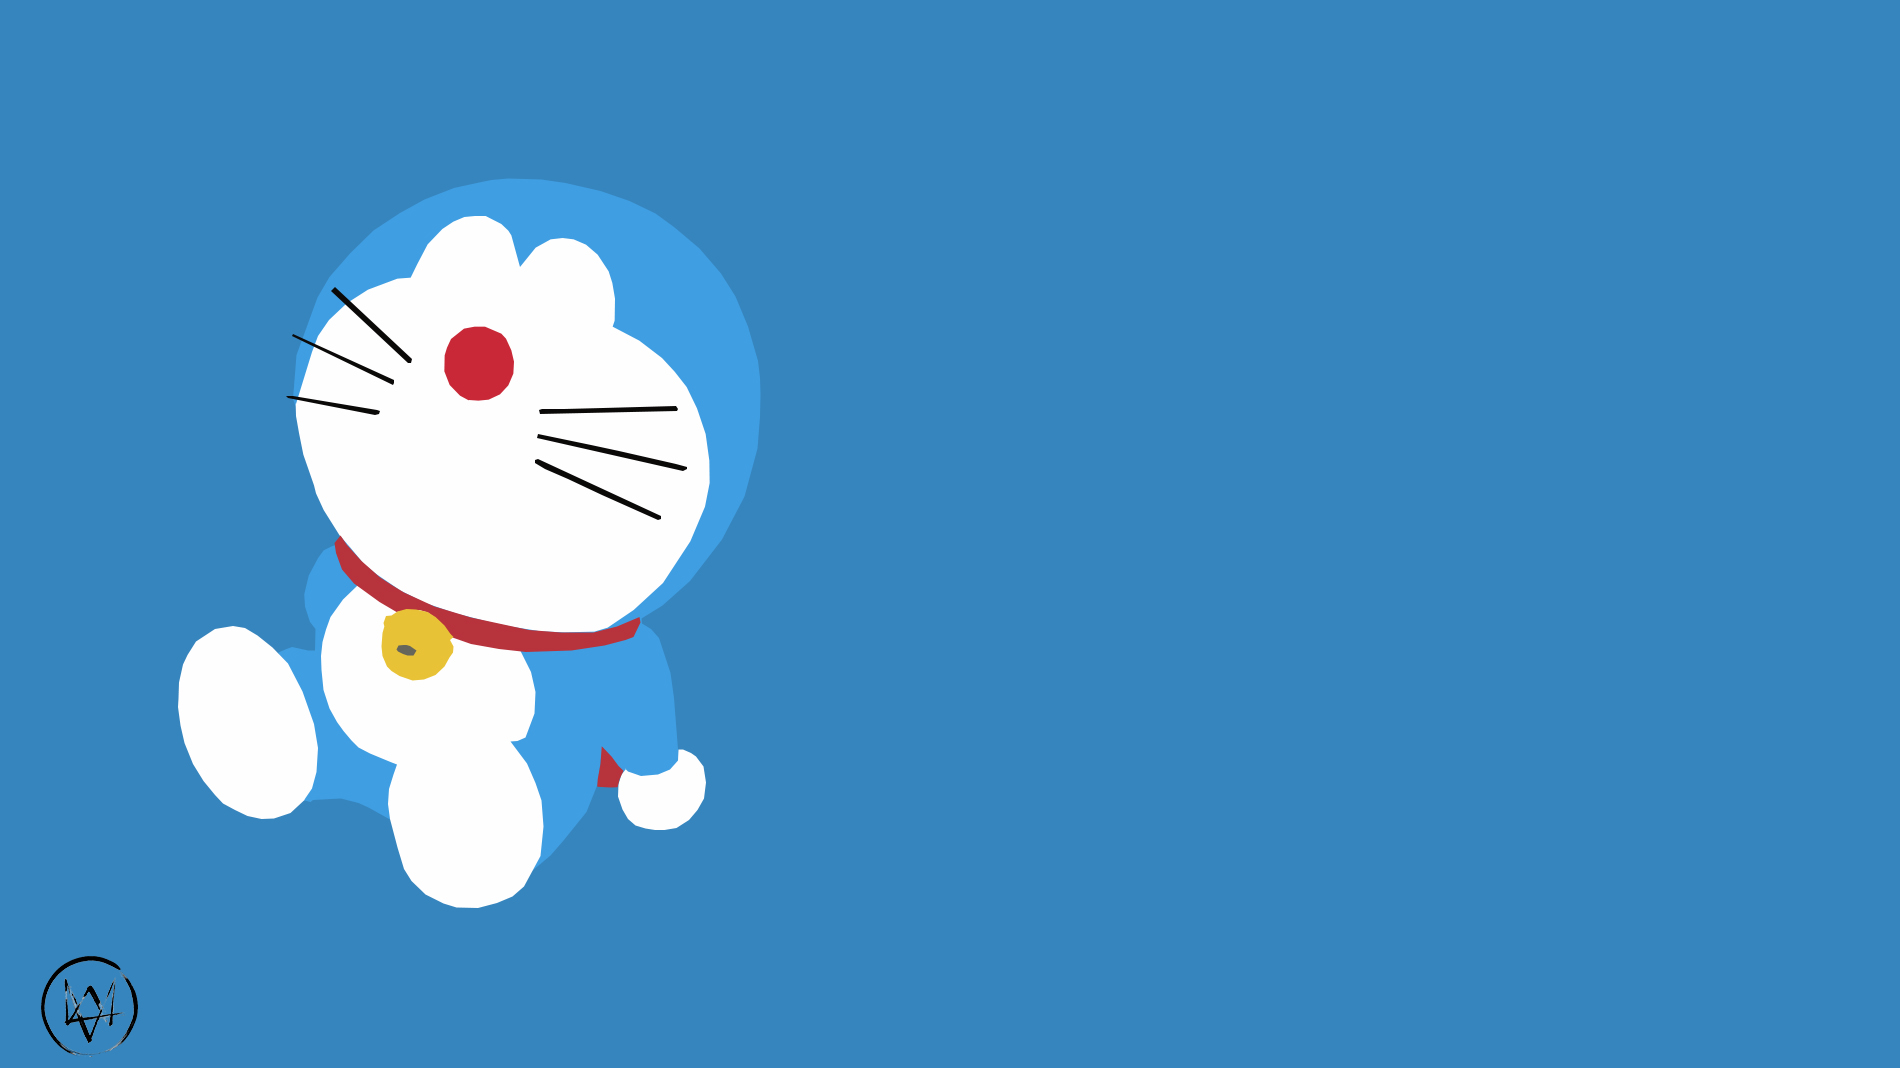 Doraemon là nhân vật rất đáng yêu và được yêu thích trong thế giới anime/manga. Sử dụng những Doraemon backgrounds tuyệt đẹp trong thiết kế của bạn sẽ tạo sự gần gũi và vui nhộn với khán giả. Xem hình liên quan để tìm cho mình bộ background yêu thích nhất nhé.